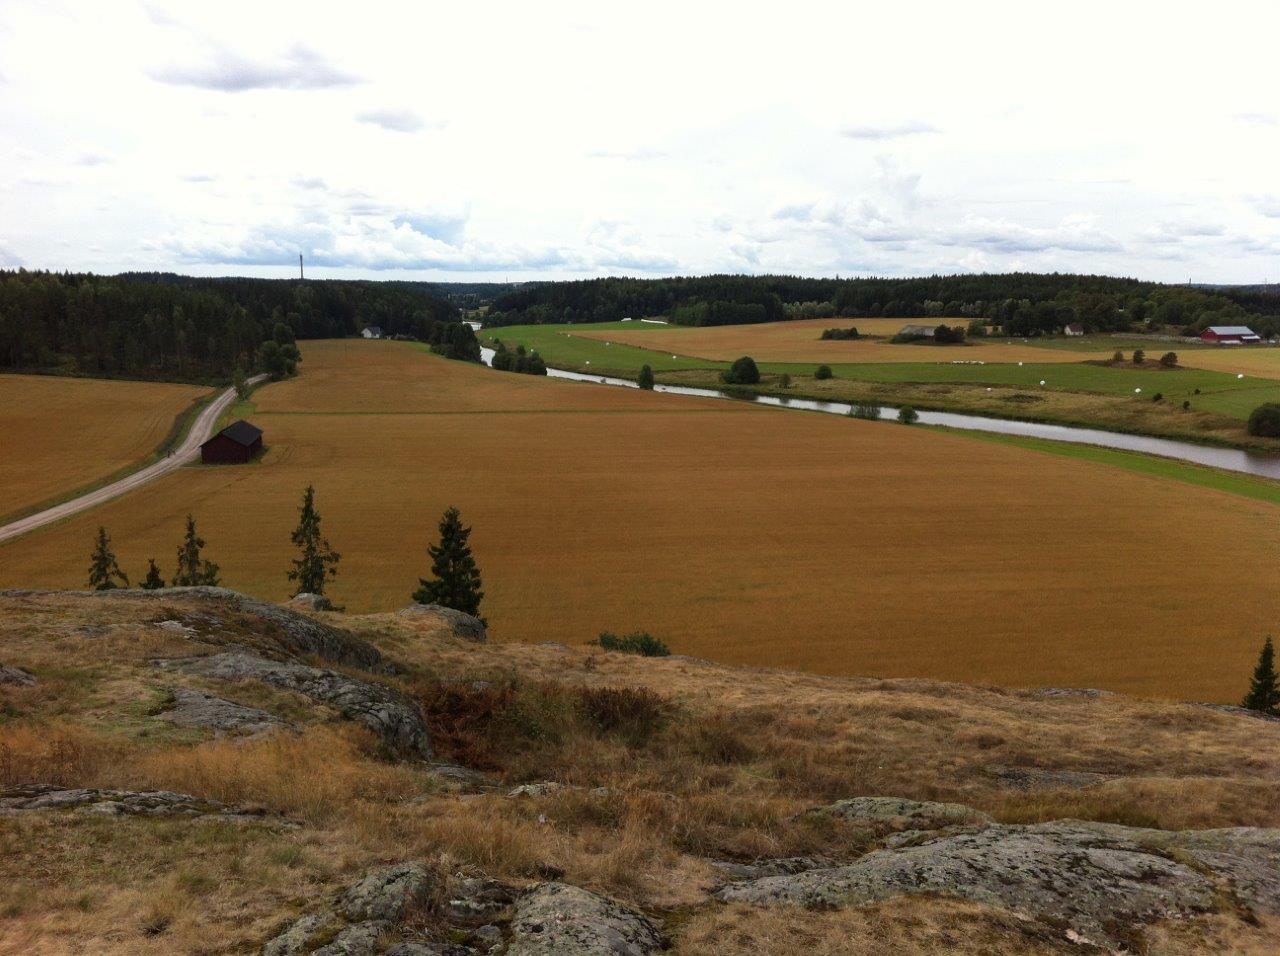 Näkymä Vanhalinnalta Hämeen Härkätielle. Wiki Loves Monuments, CC BY-SA 4.0 Eteil 2013